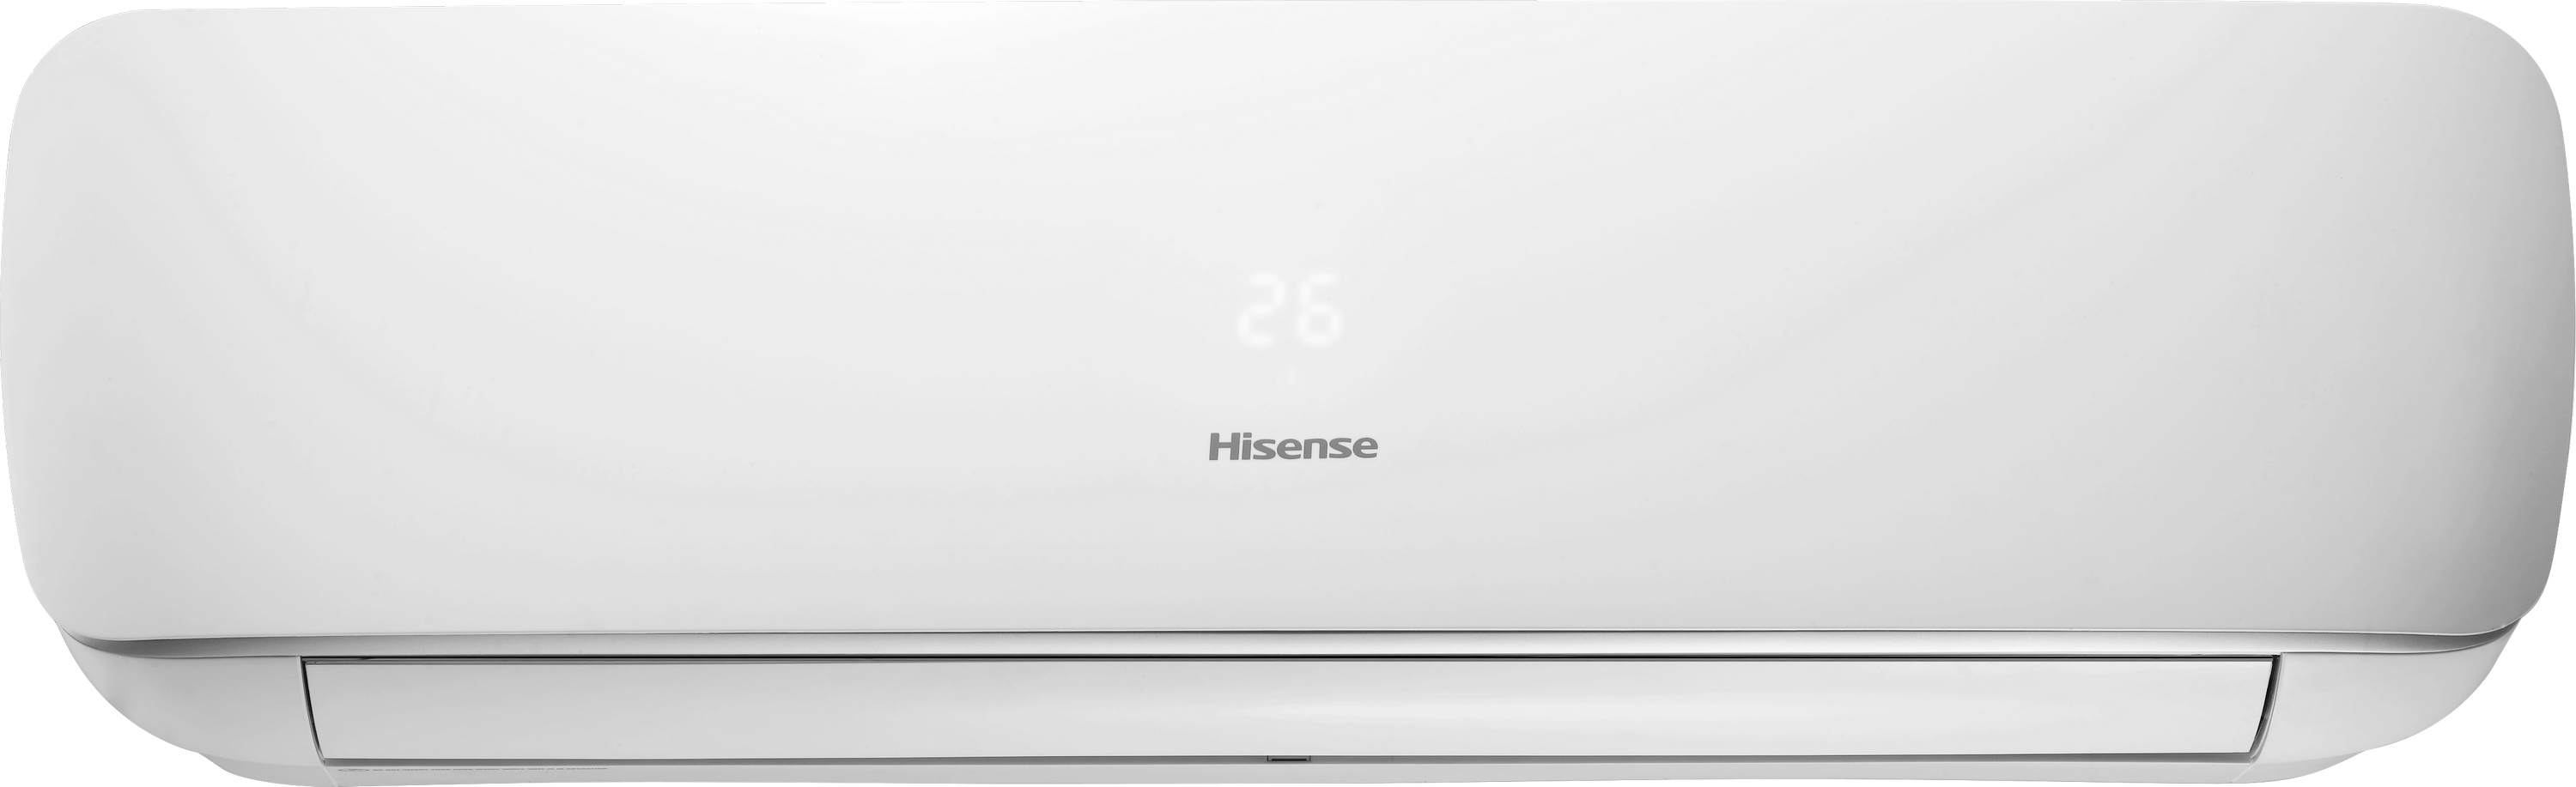 Кондиционер сплит-система Hisense Apple Pie R32 TG70BB0B цена 0.00 грн - фотография 2